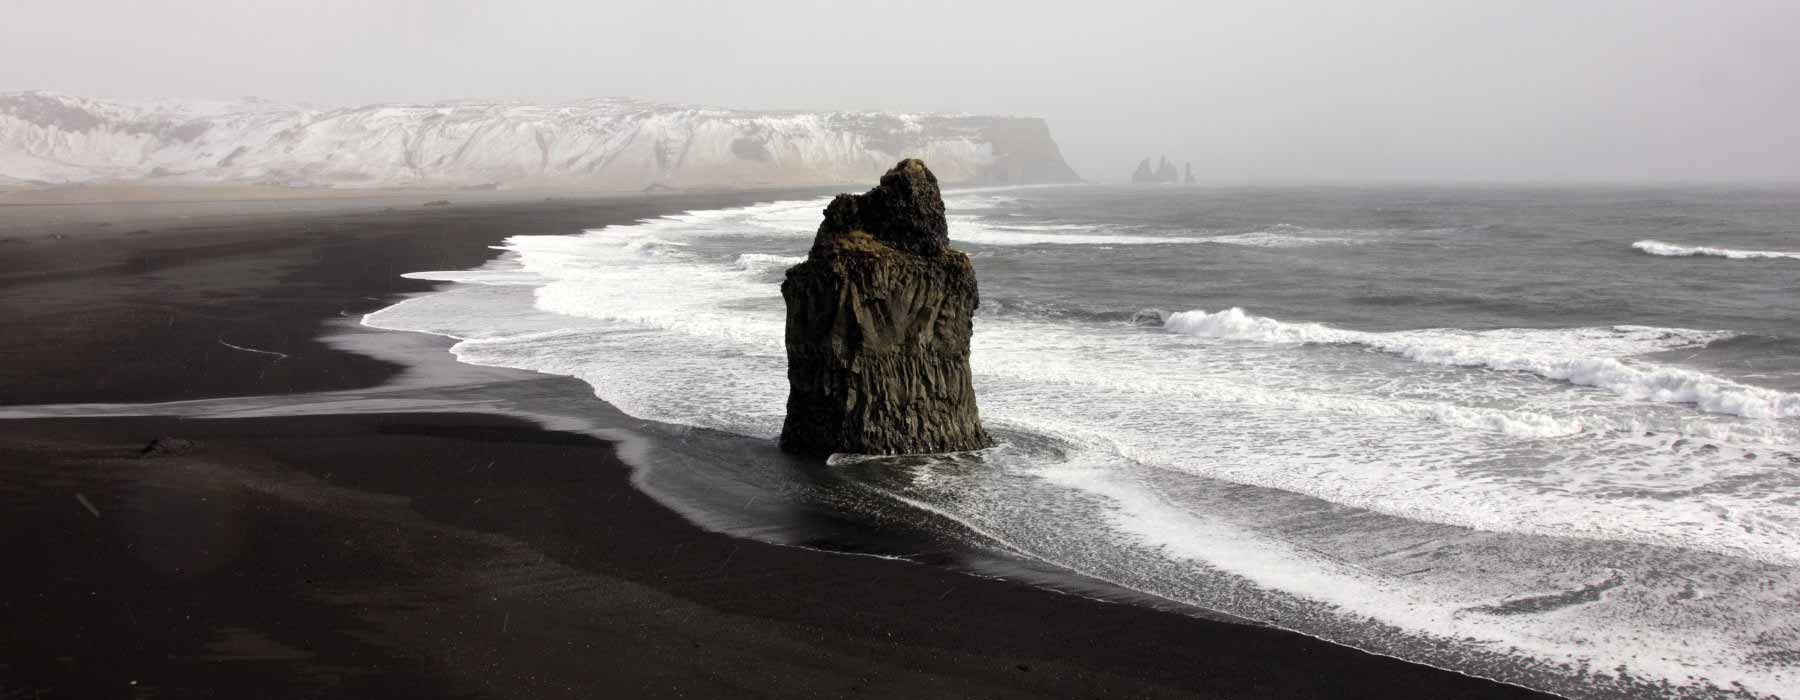 Iceland<br class="hidden-md hidden-lg" /> Winter Holidays